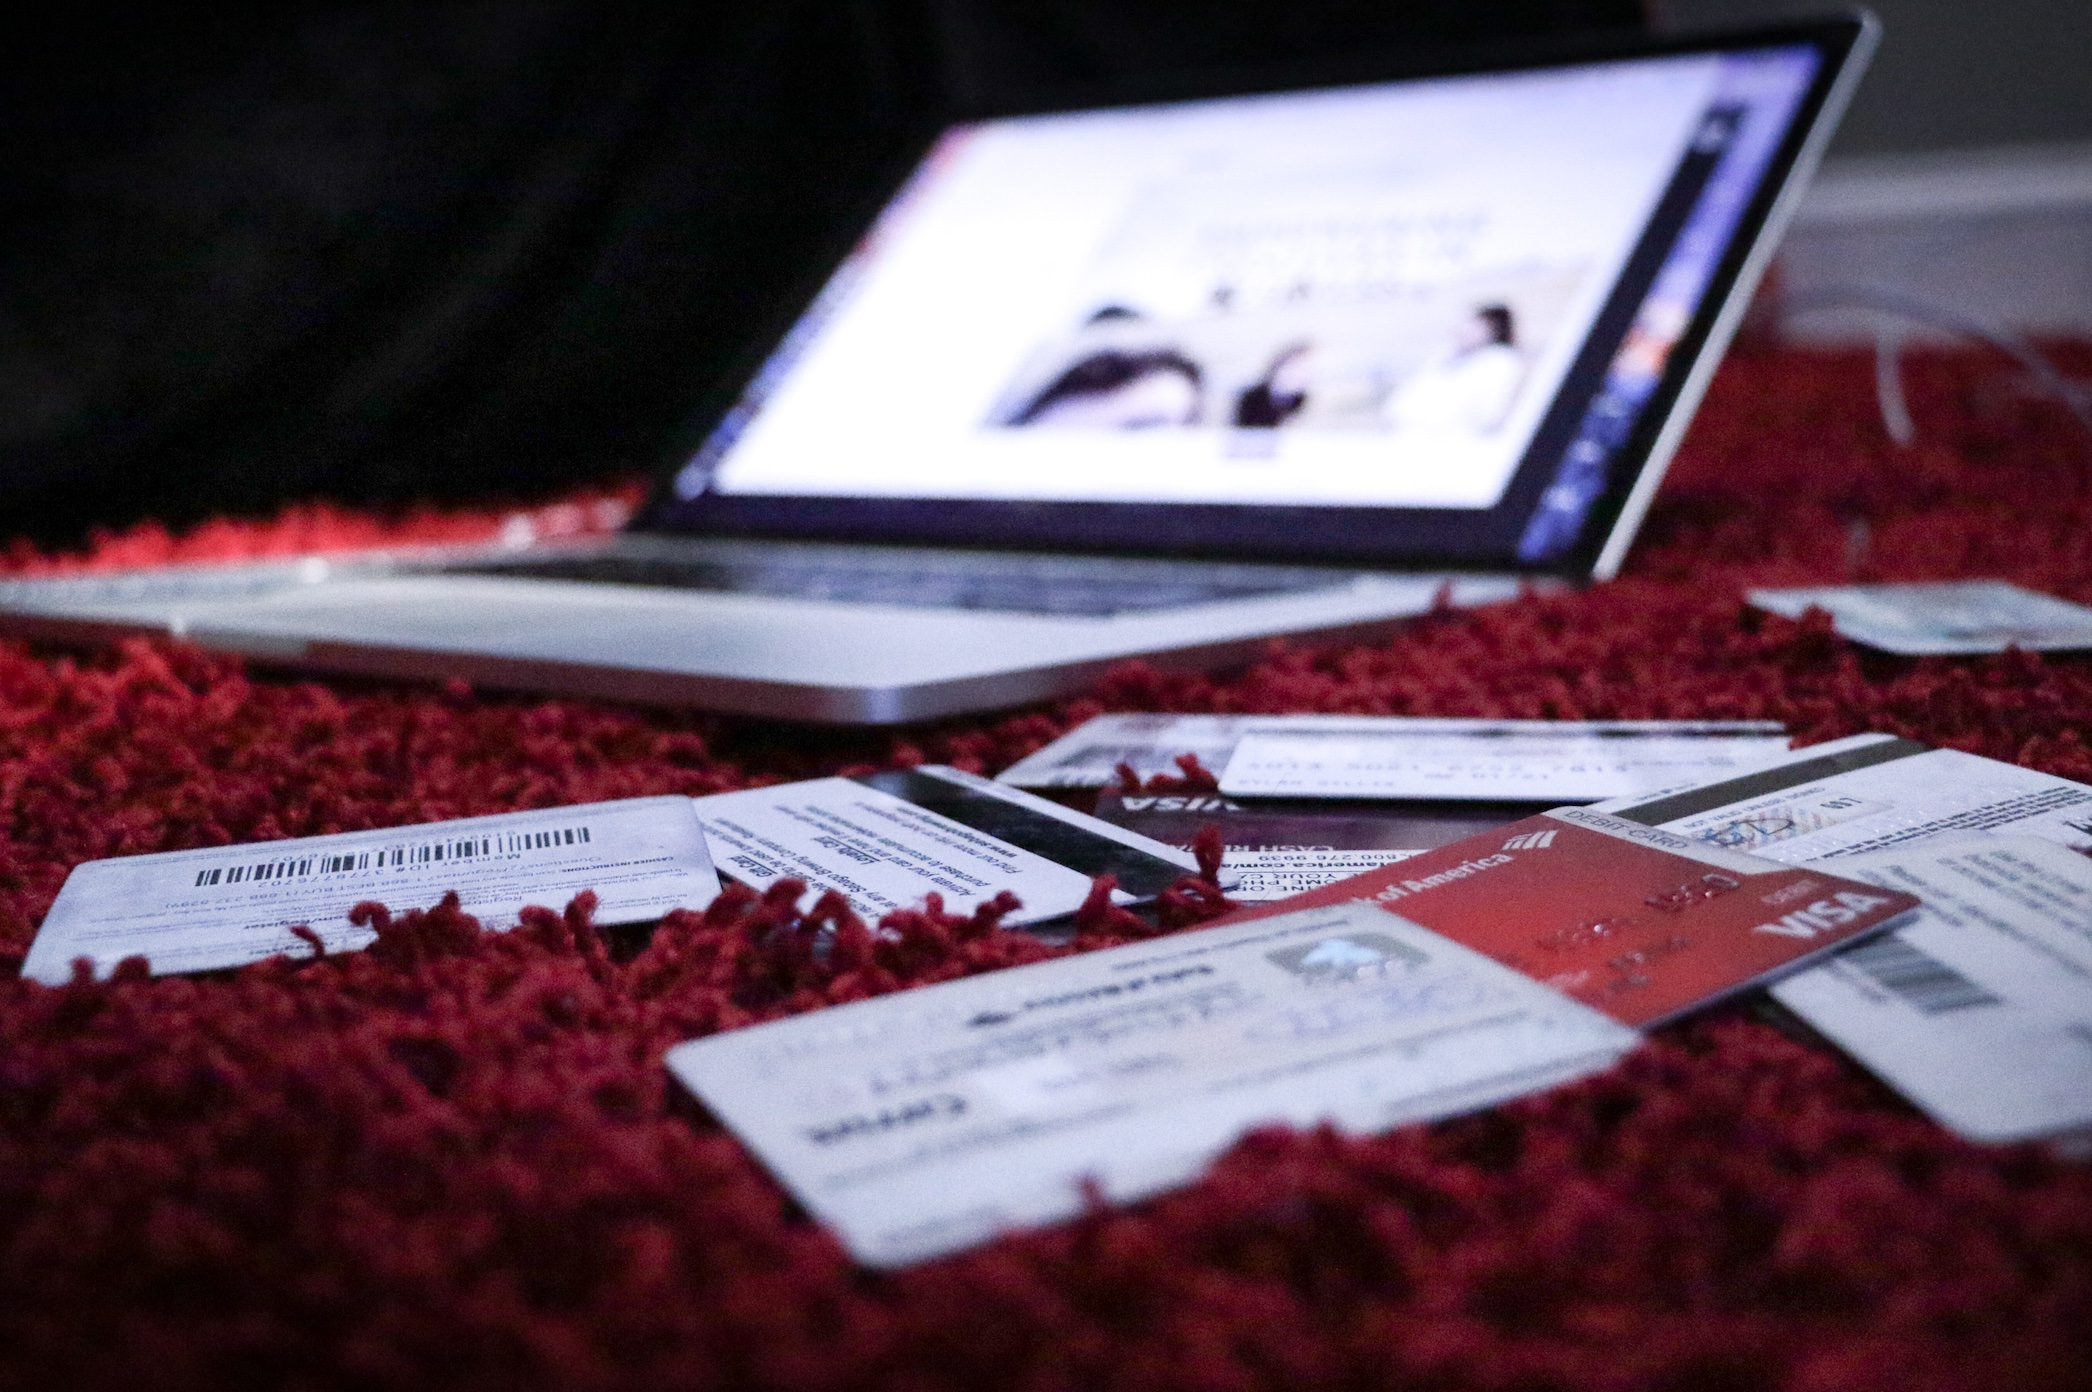 Laptop and credit cards on red shag carpet; image by Dylan Gillis, via Unsplash.com.